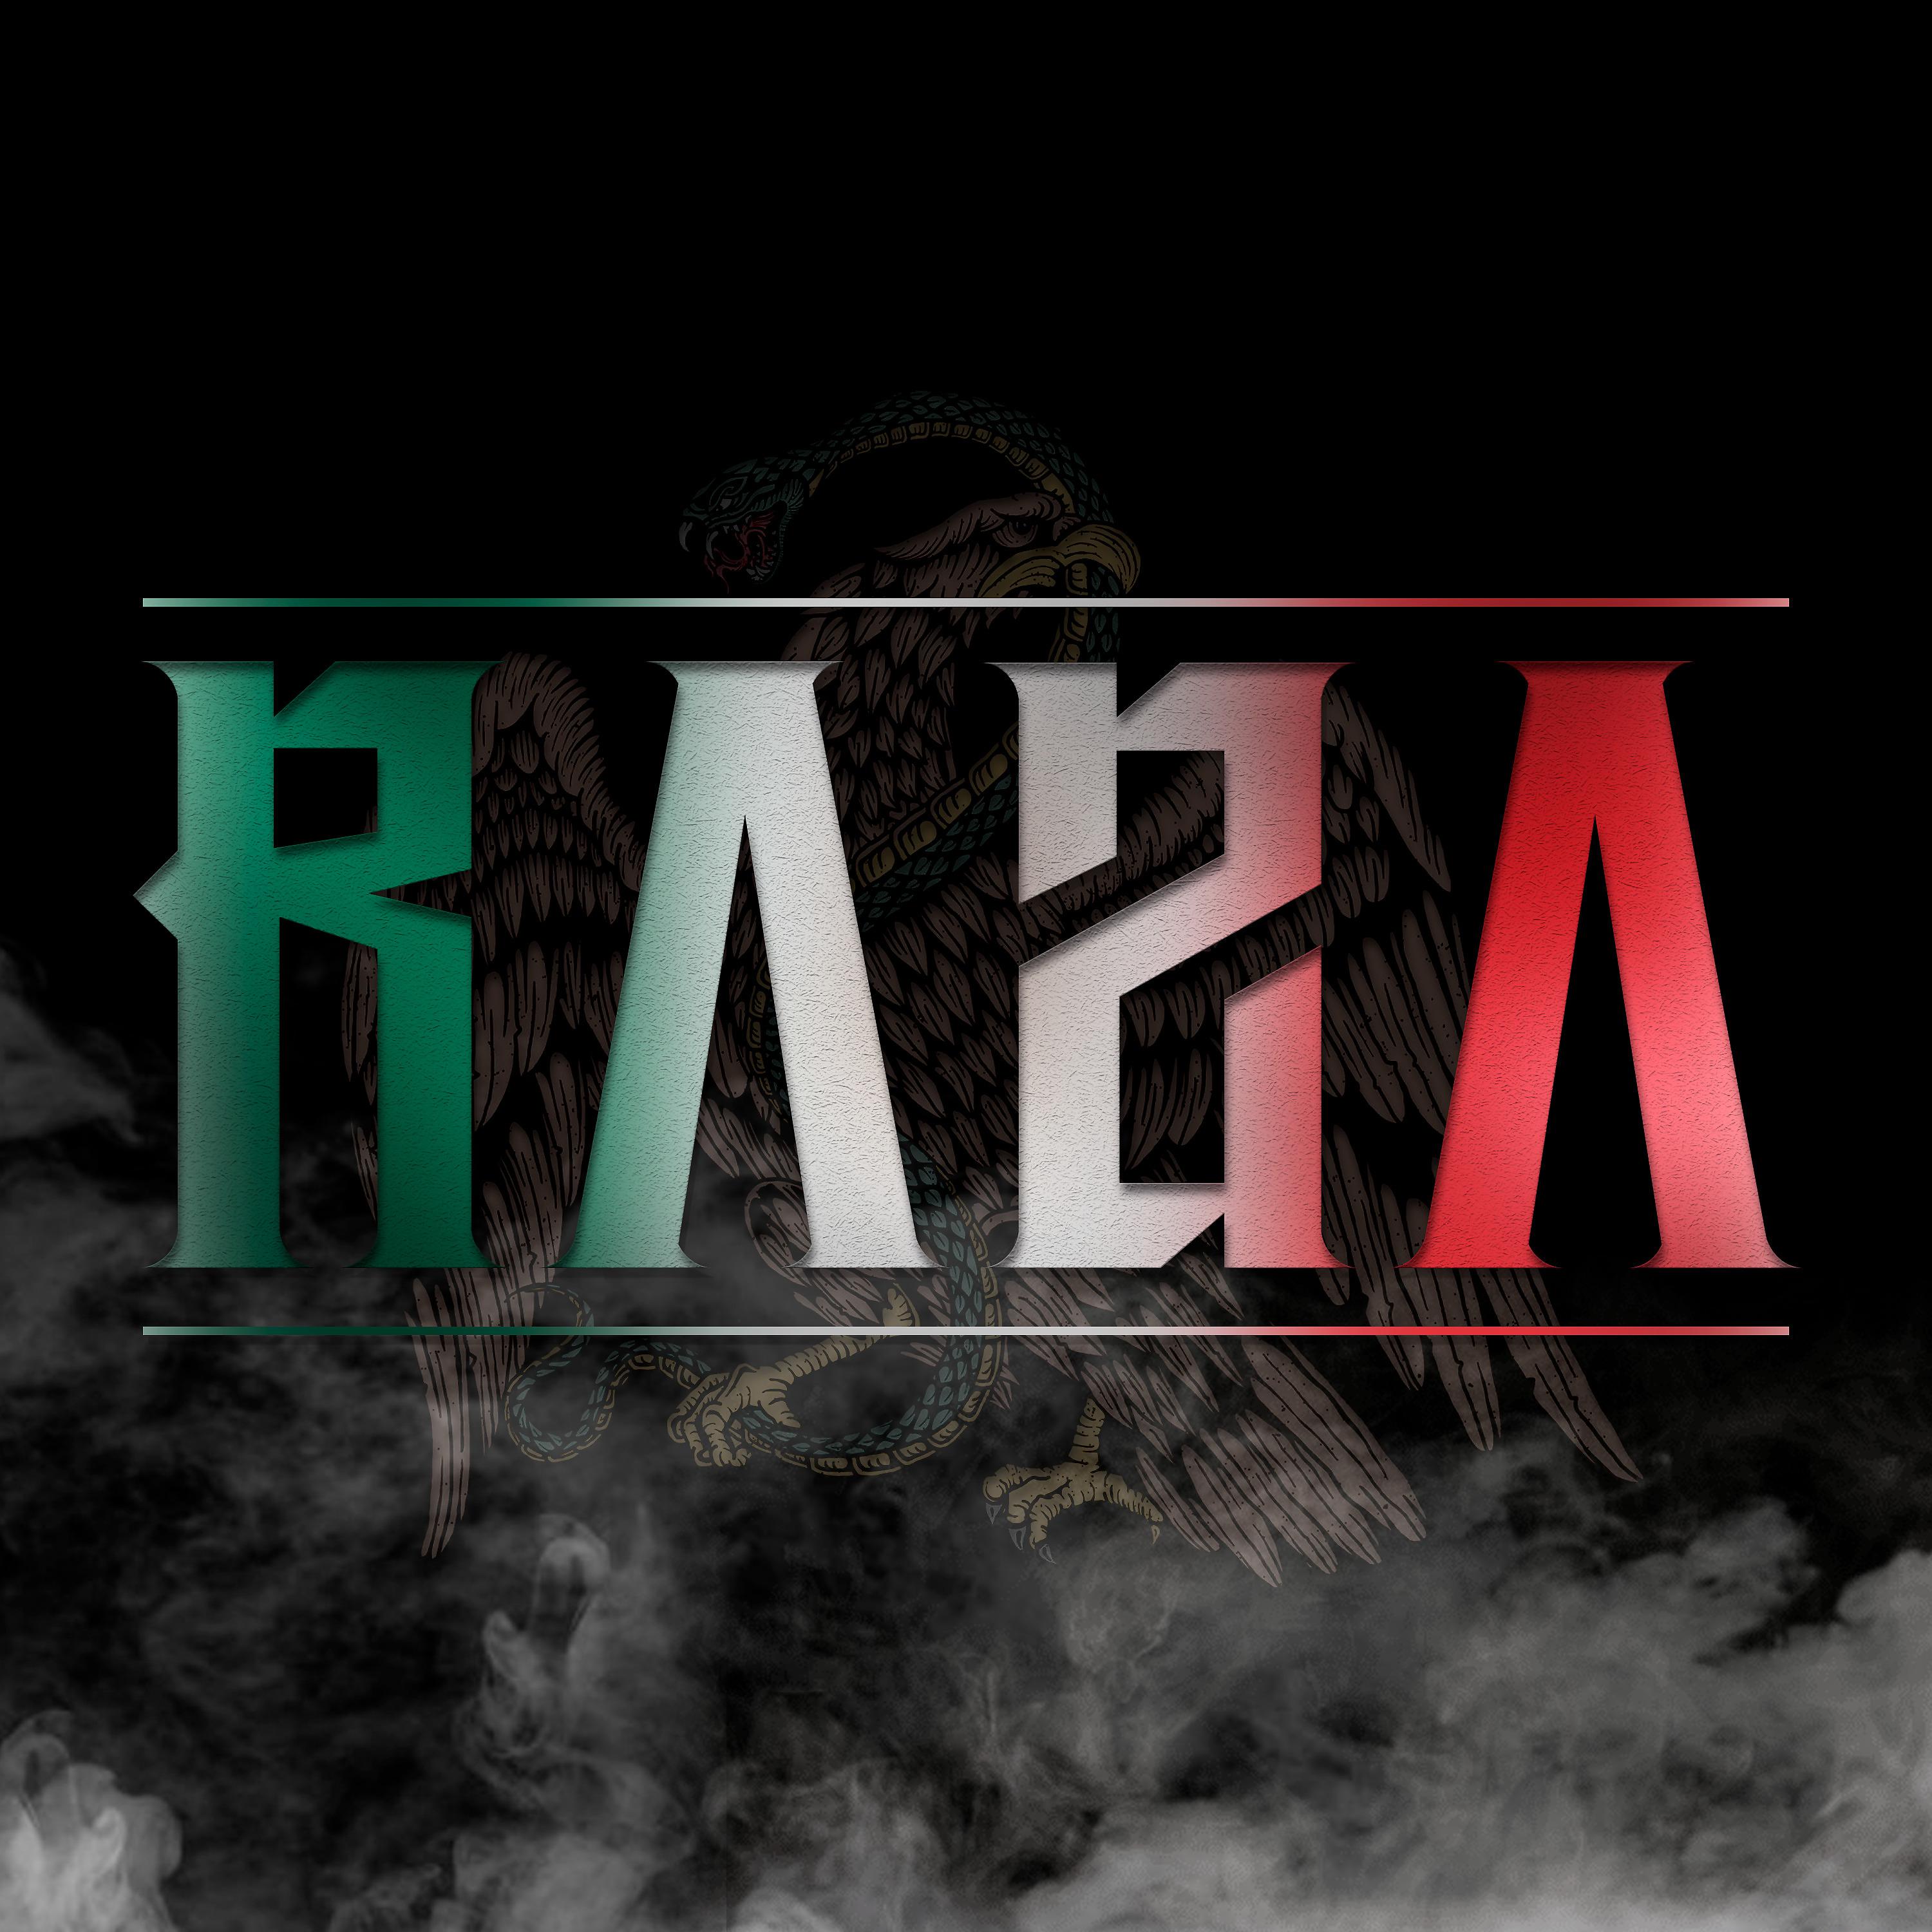 Постер альбома Raza